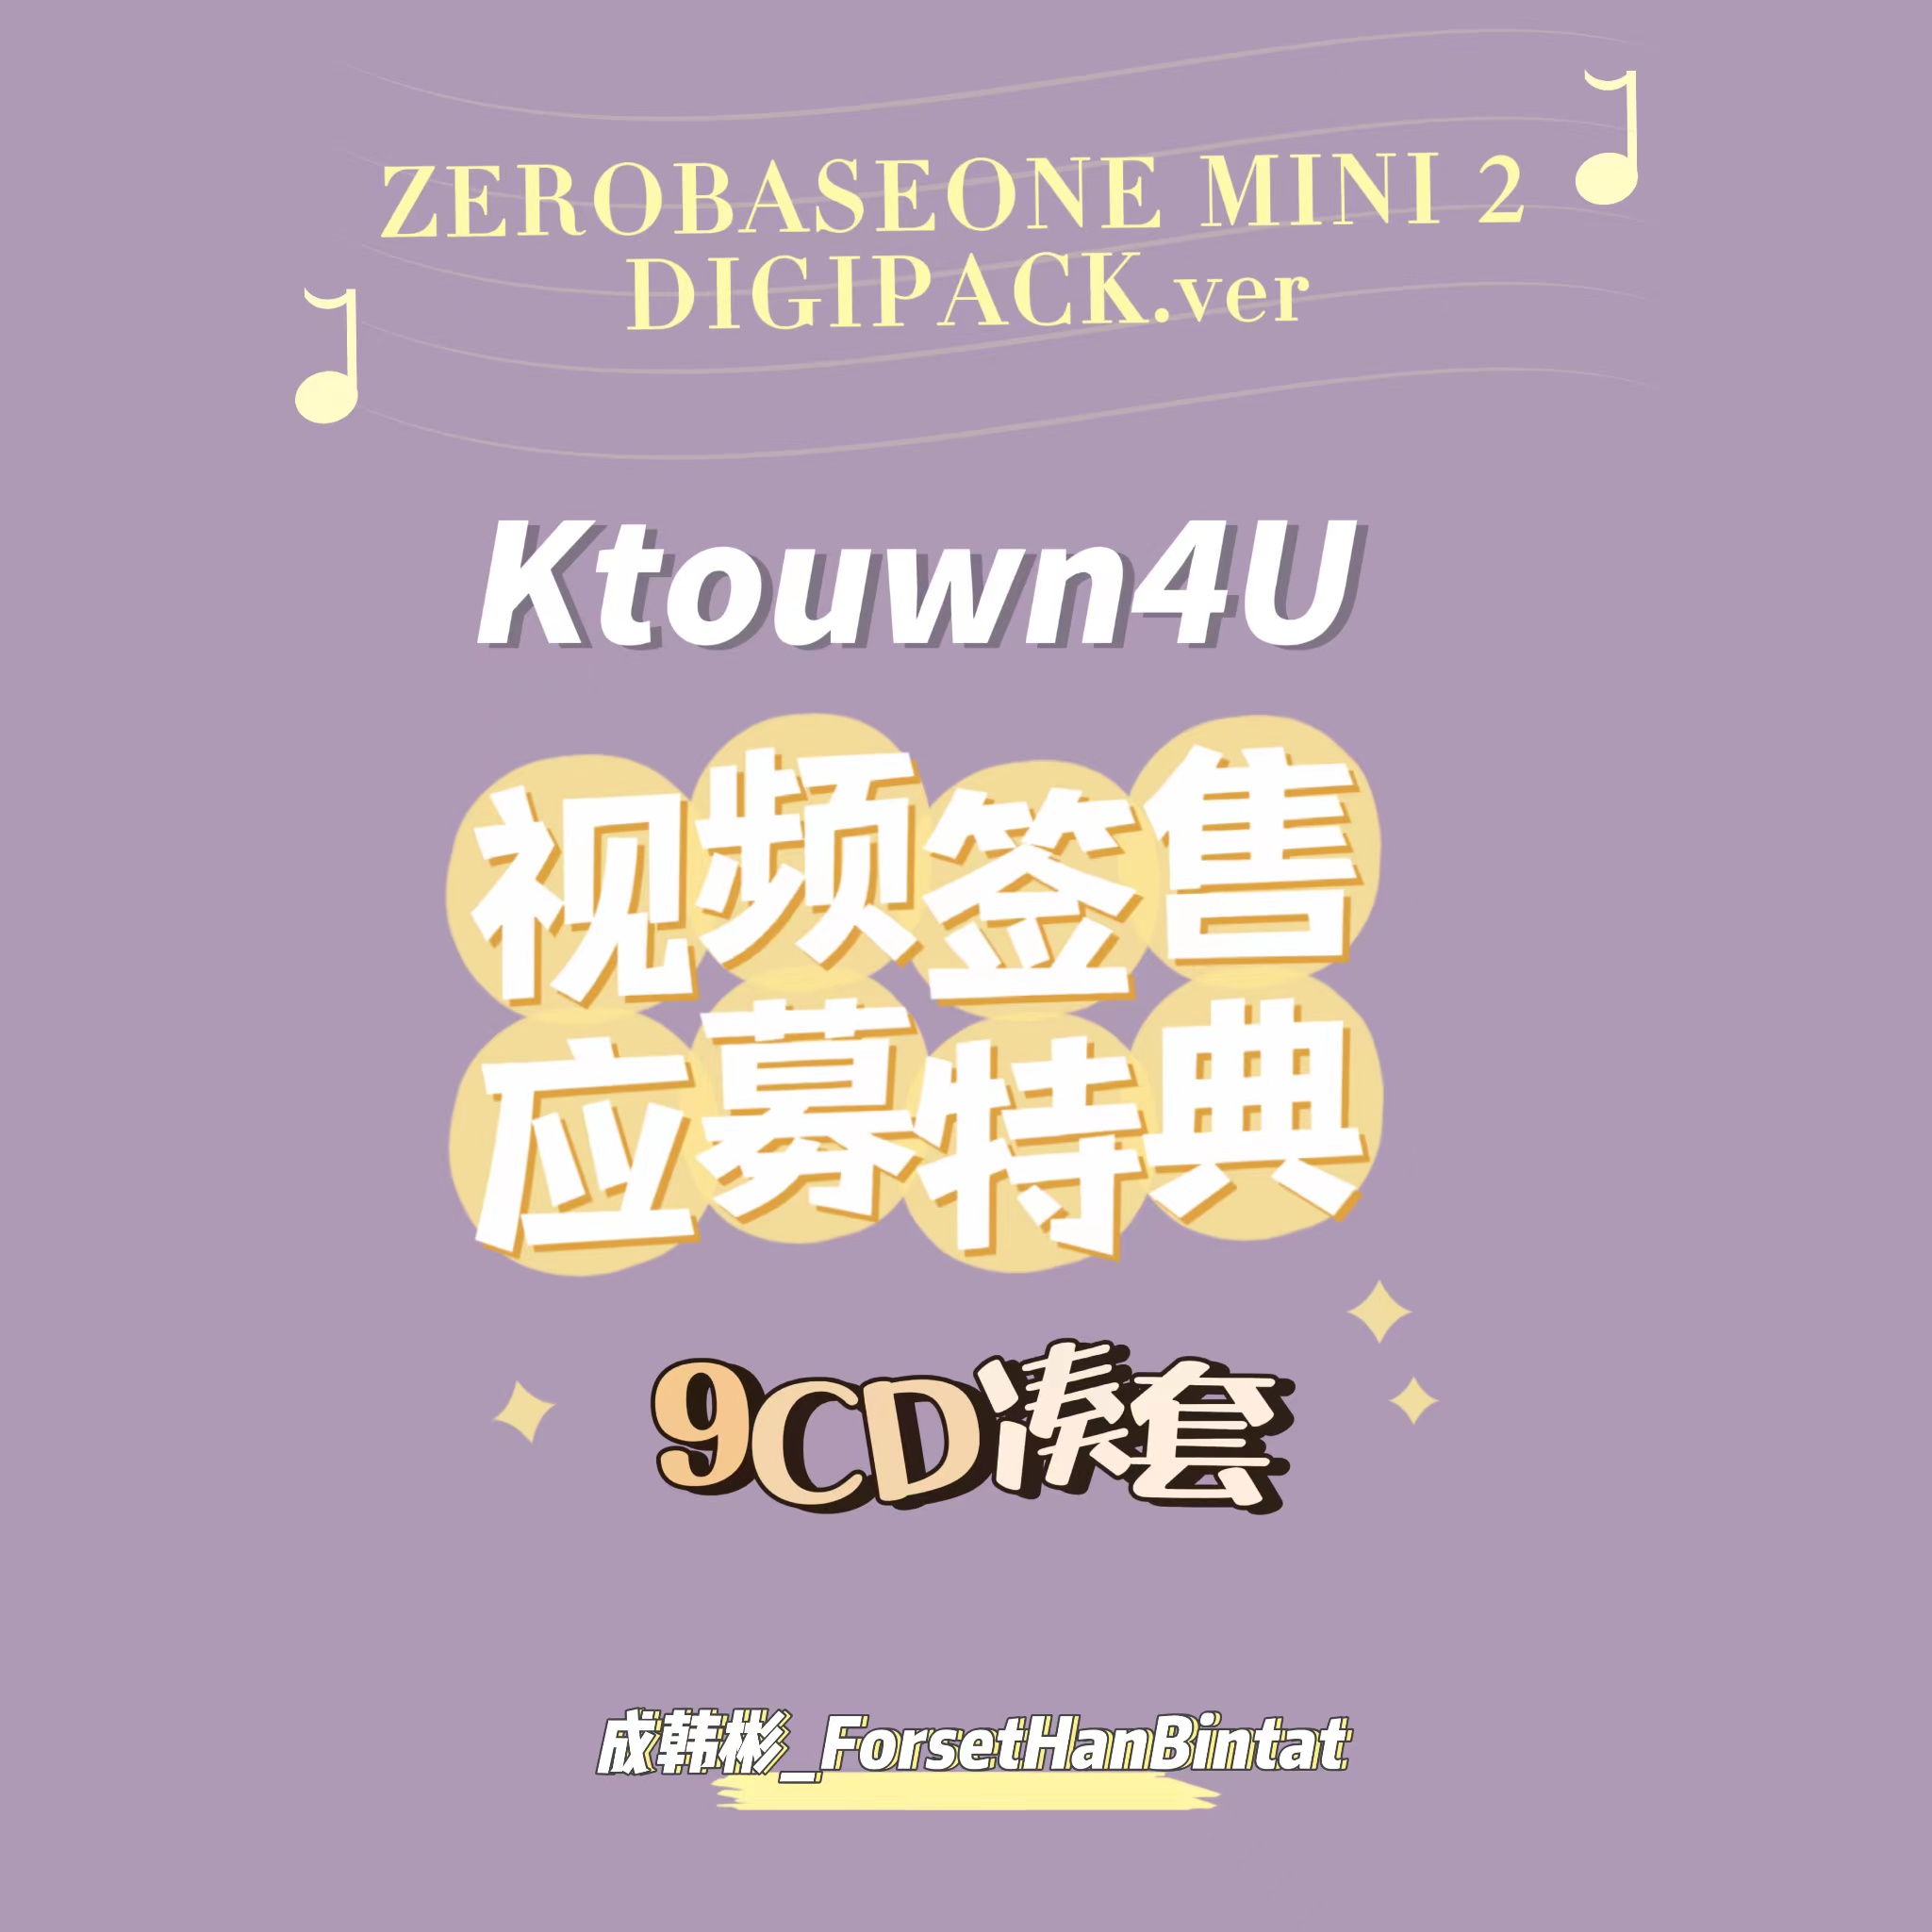 [全款 裸专] [Video Call Sign Event] [9CD SET] ZEROBASEONE - The 2nd Mini Album [MELTING POINT] (DIGIPACK ver.)_ 成韩彬_ForestHanBintat